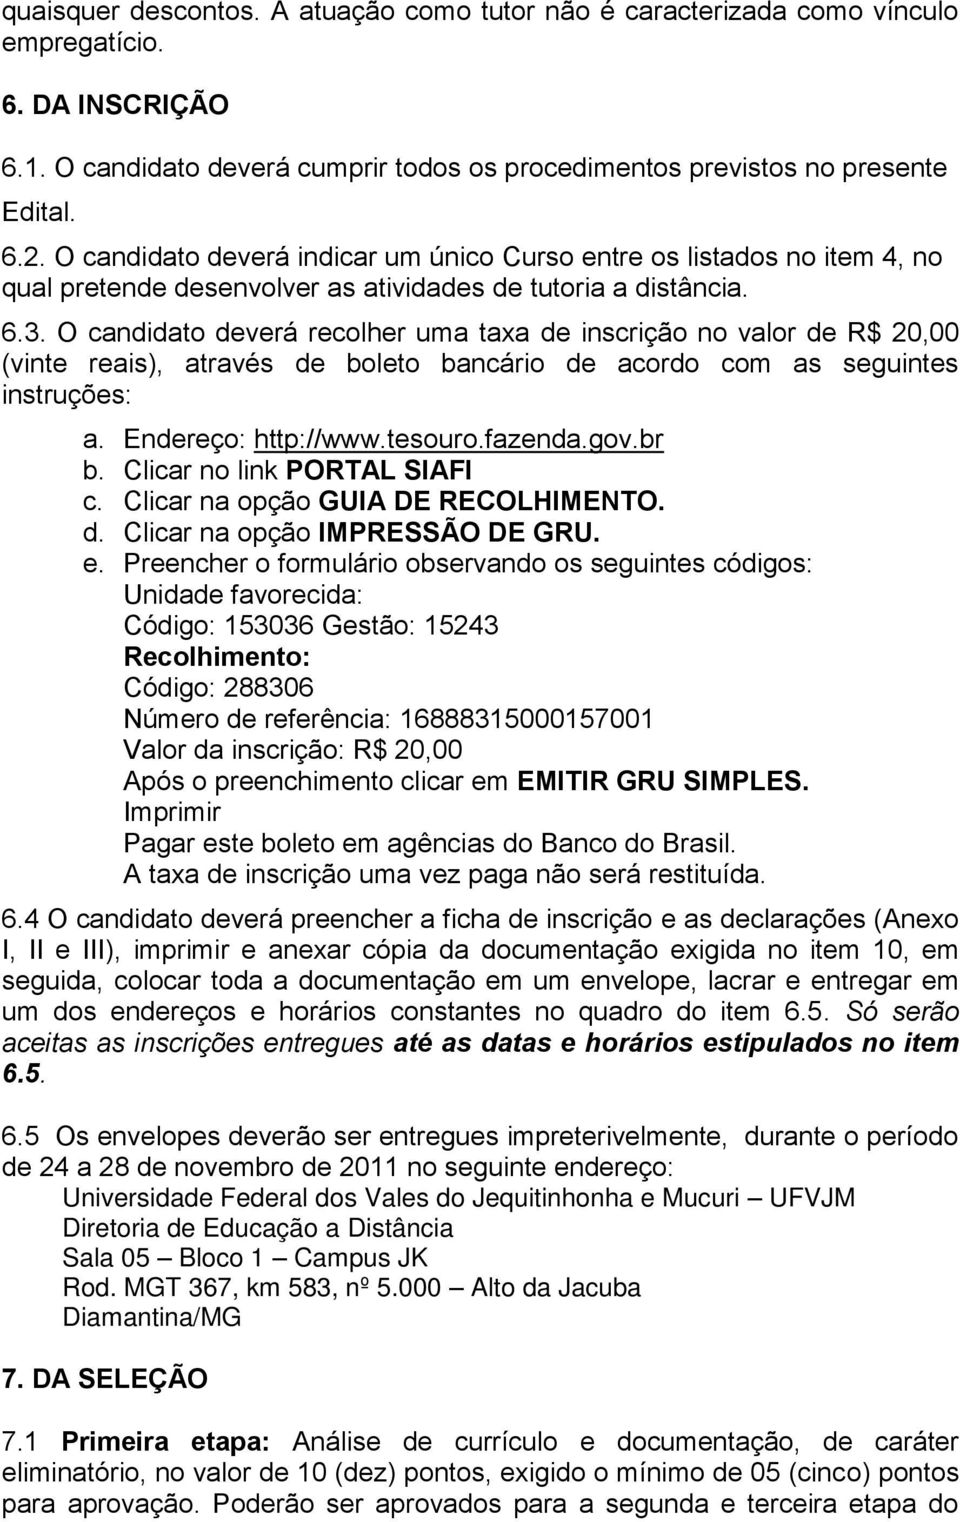 O candidato deverá recolher uma taxa de inscrição no valor de R$ 20,00 (vinte reais), através de boleto bancário de acordo com as seguintes instruções: a. Endereço: http://www.tesouro.fazenda.gov.